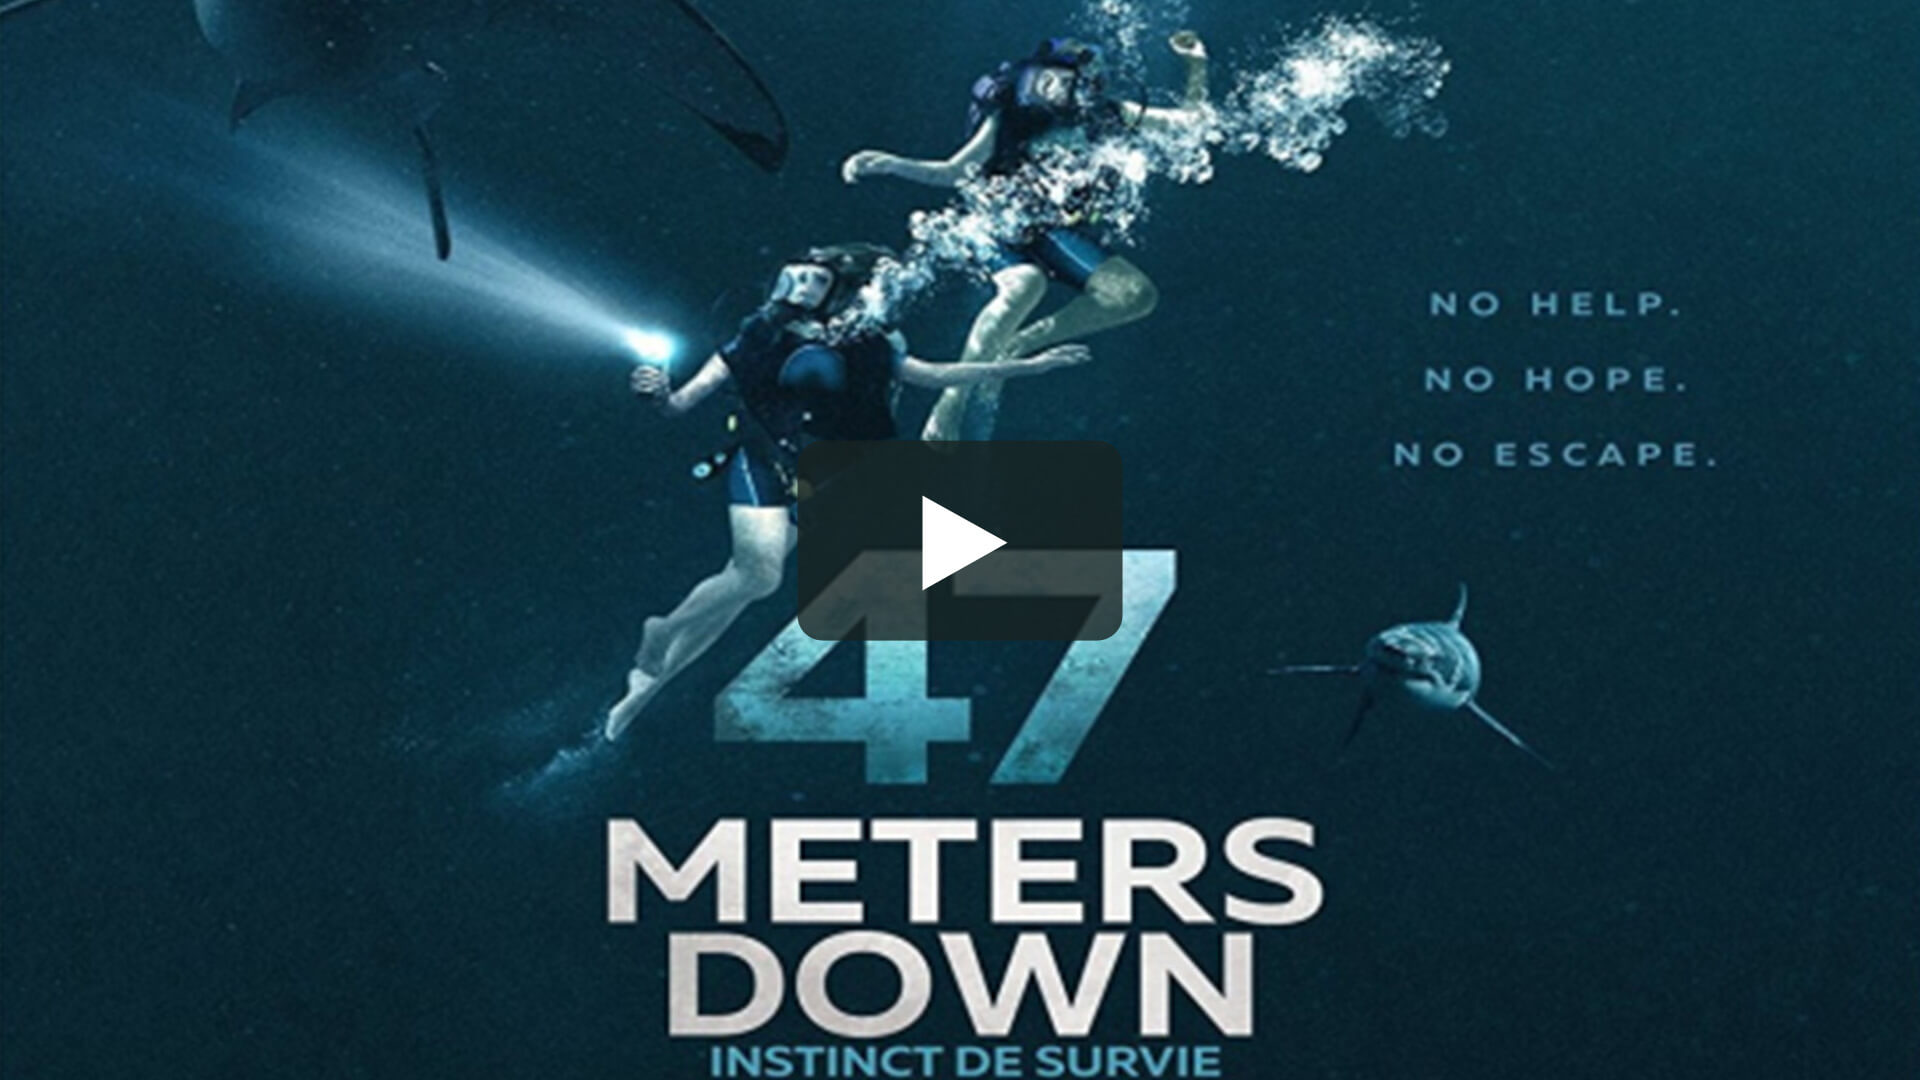 47 Meters Down - 深海逃生